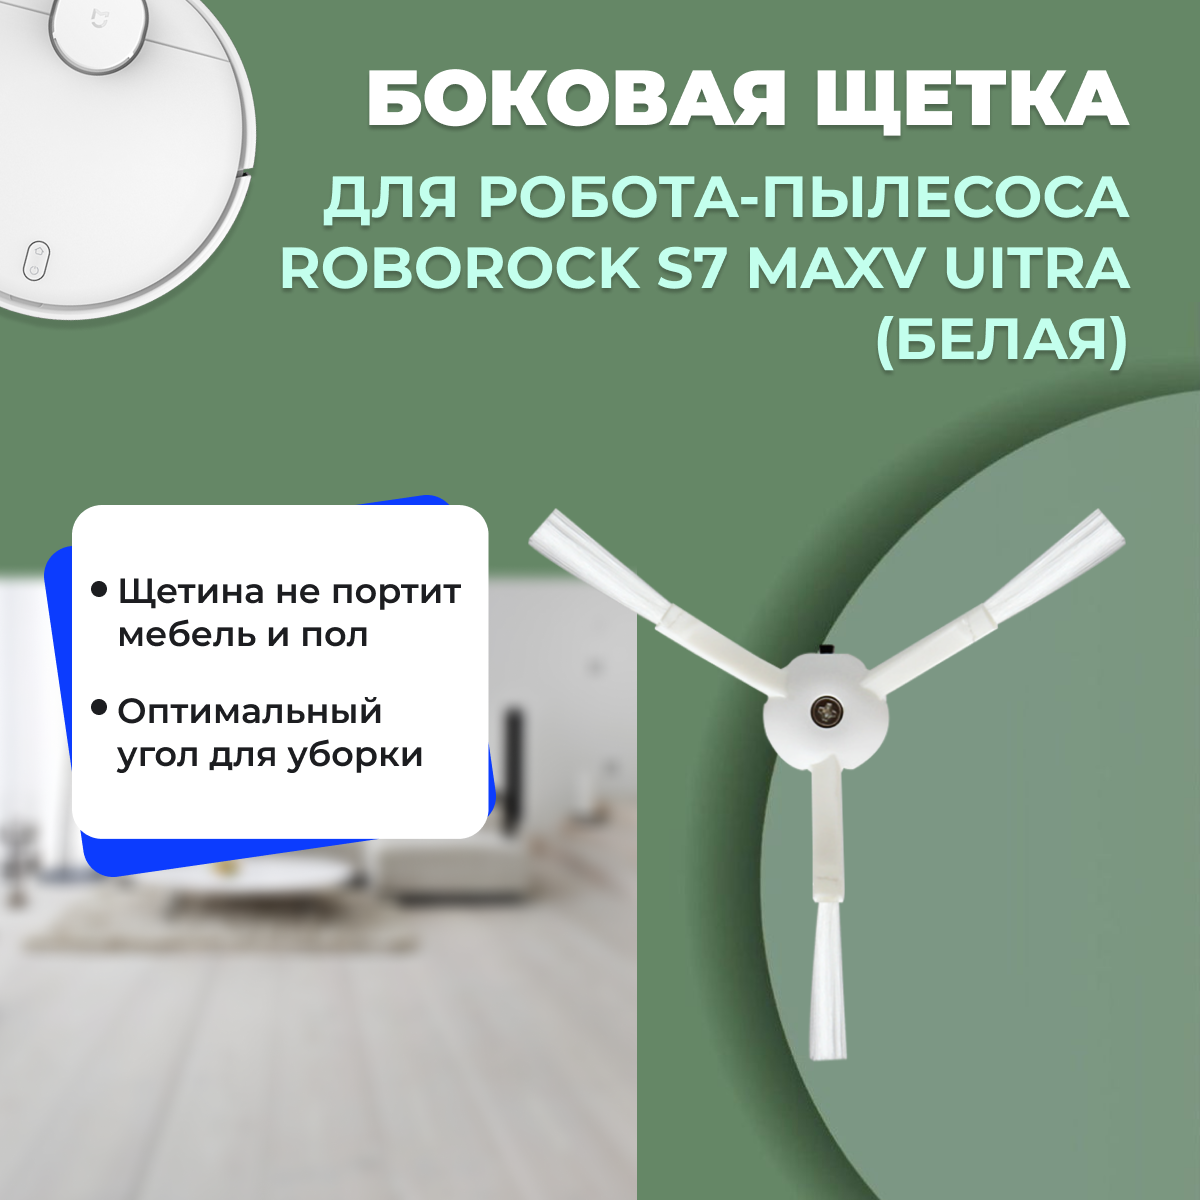 Боковая щетка для робота-пылесоса Roborock S7 MaxV Ultra, белая 558179, фото 1